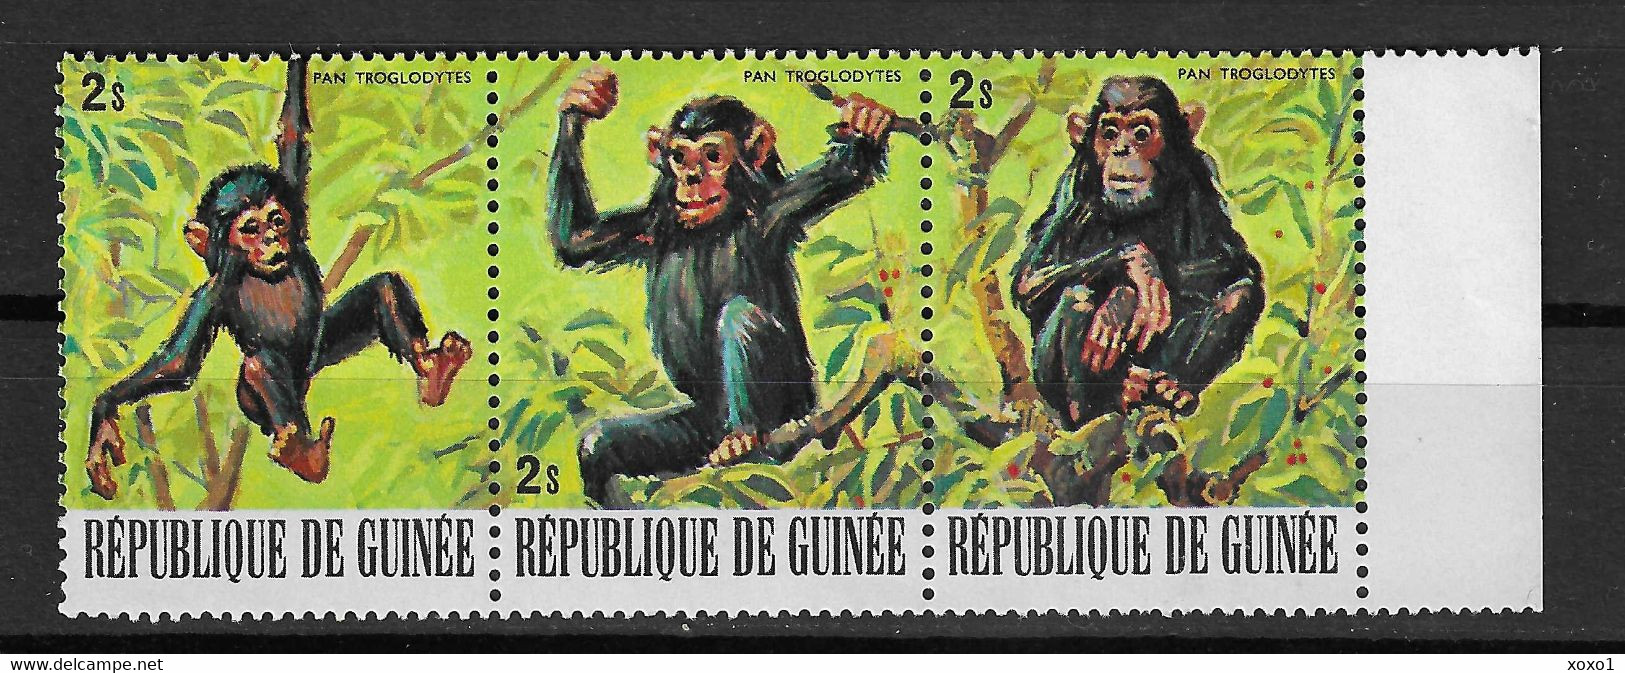 Guinea 1977 Mi.No. 796 - 798  Animals  Pan Troglodytes  Chimpanzee  3v  MNH** 1.50 € - Chimpancés